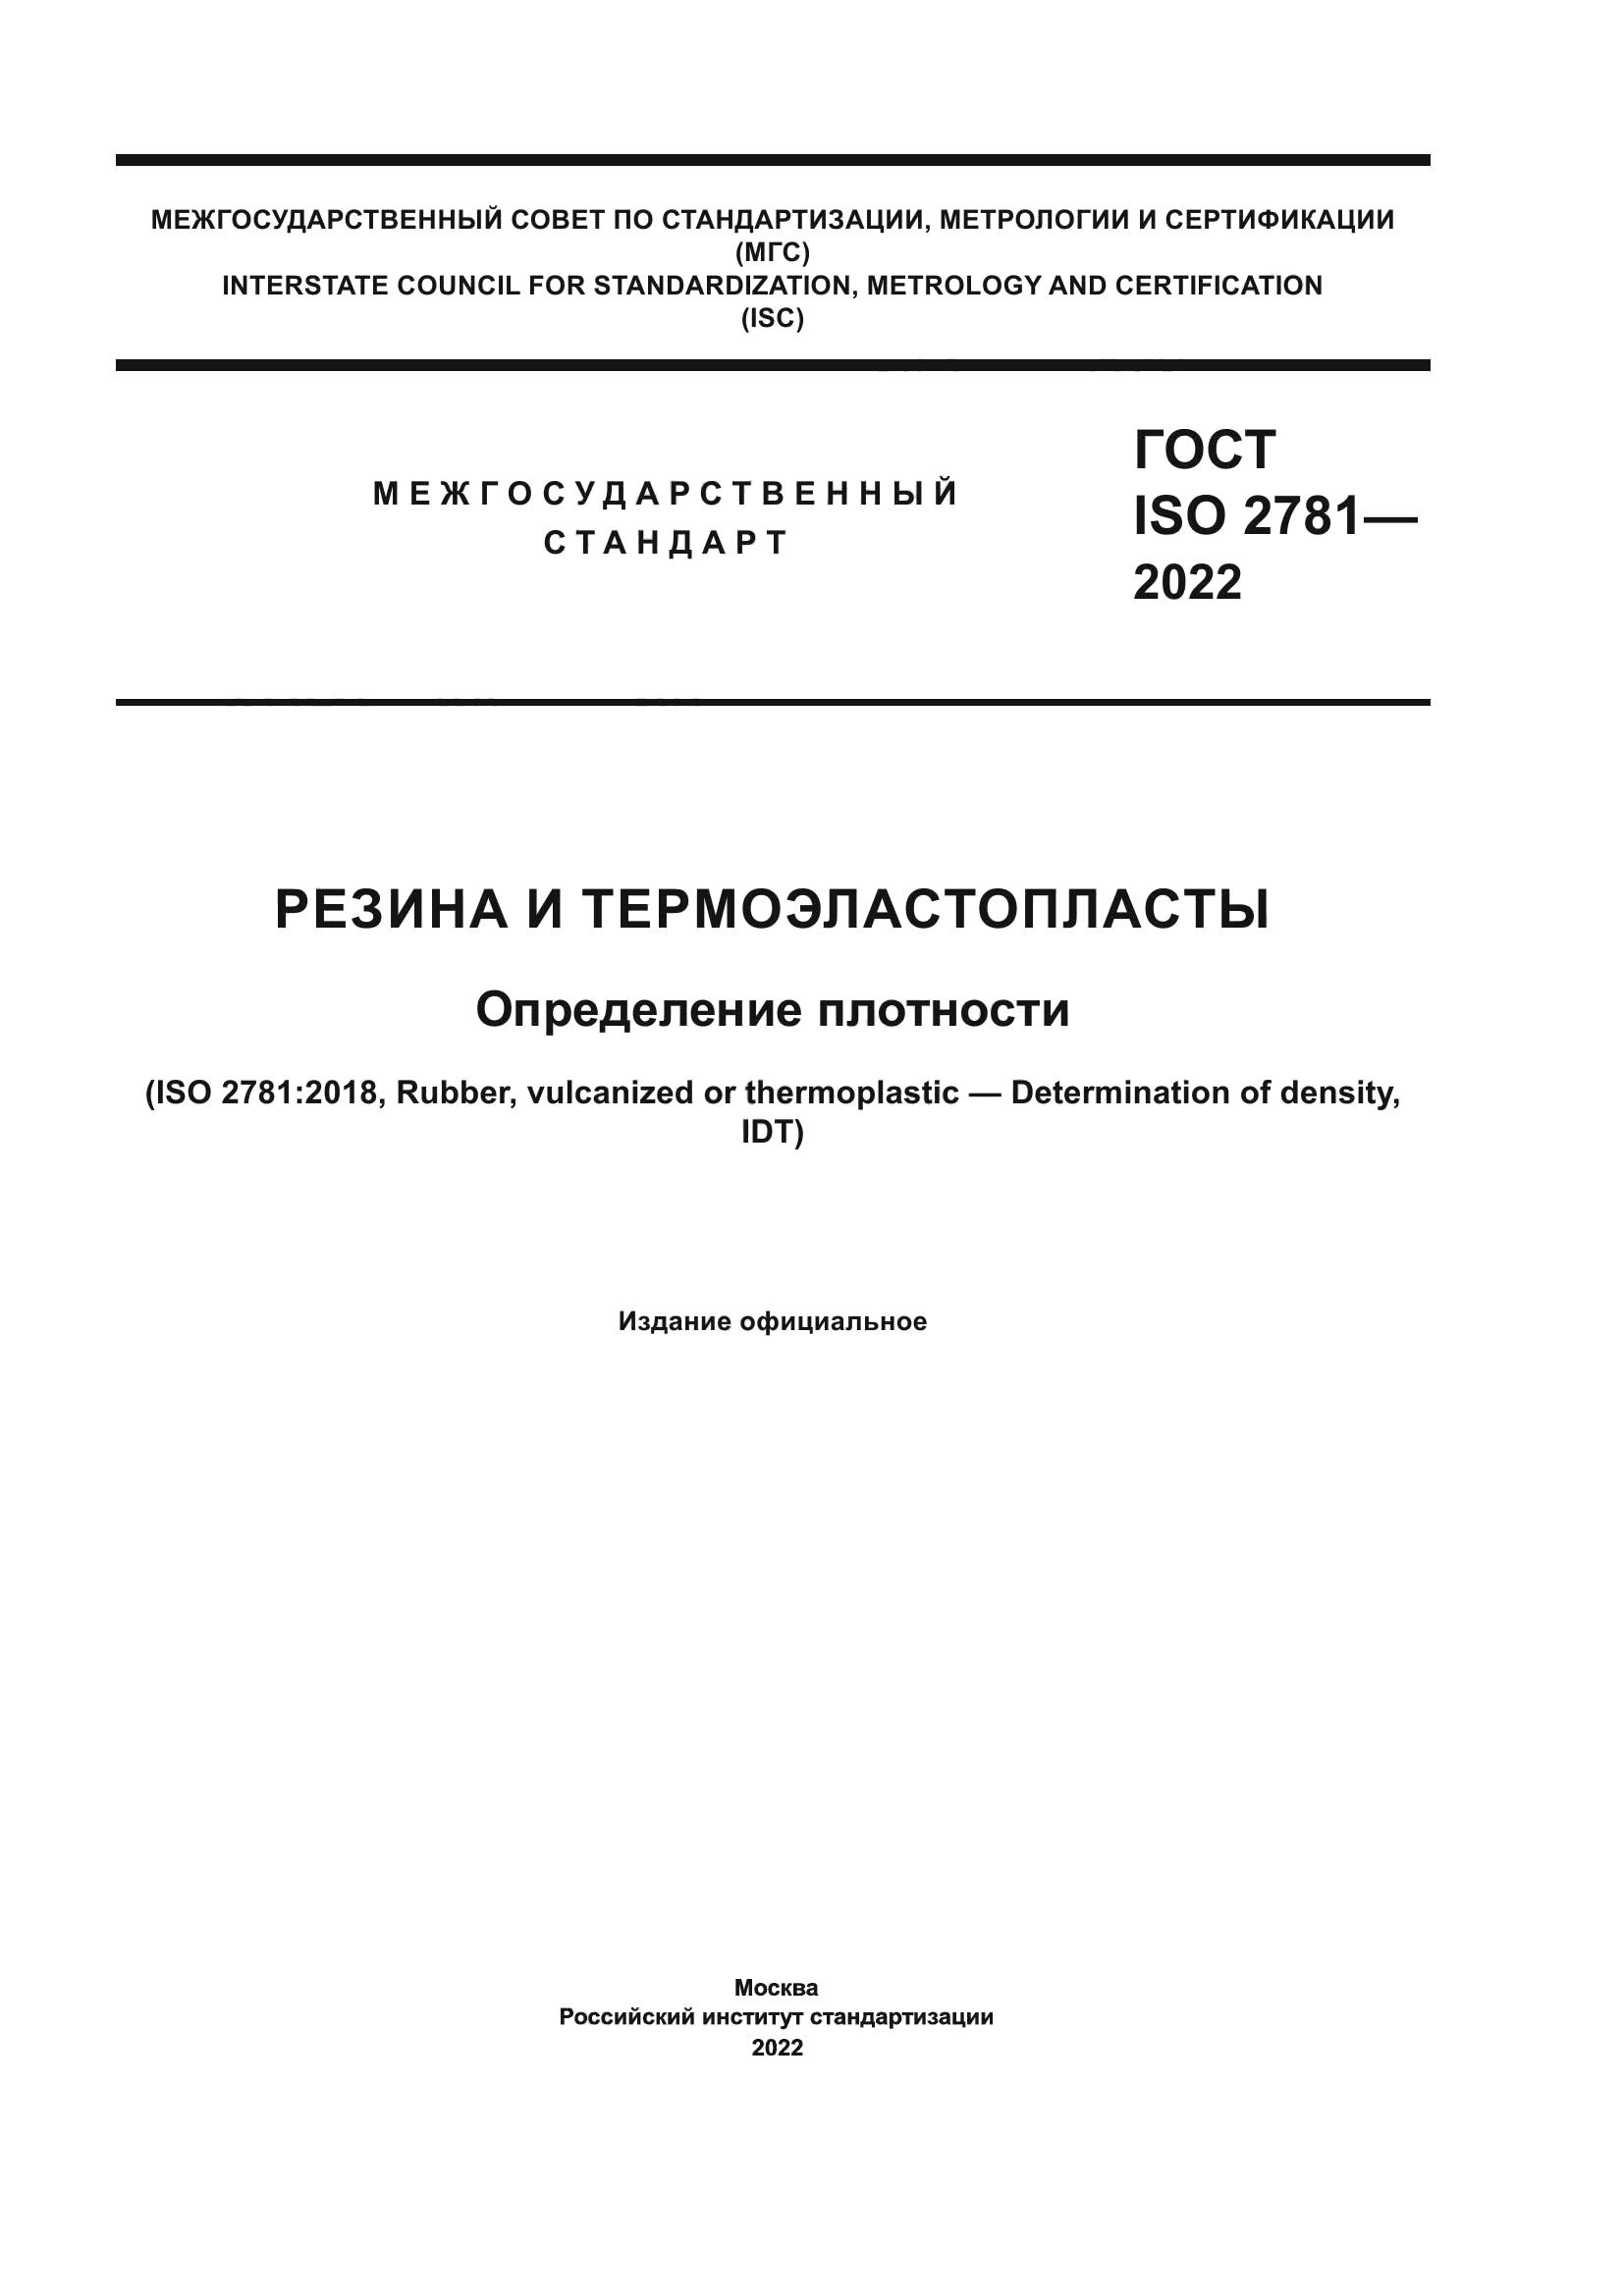 ГОСТ ISO 2781-2022